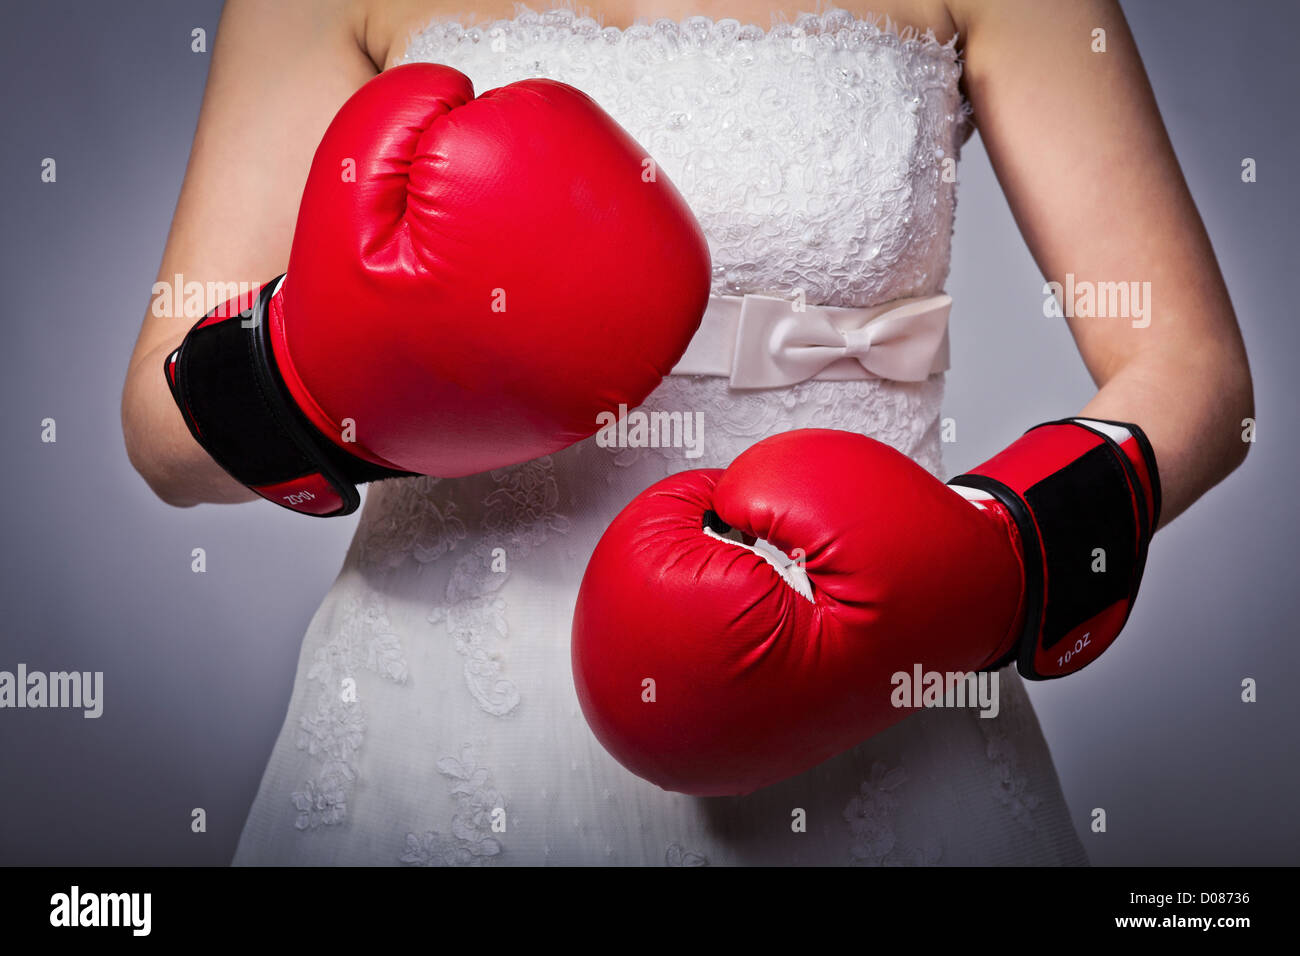 Détail de bride wearing boxing gloves Banque D'Images